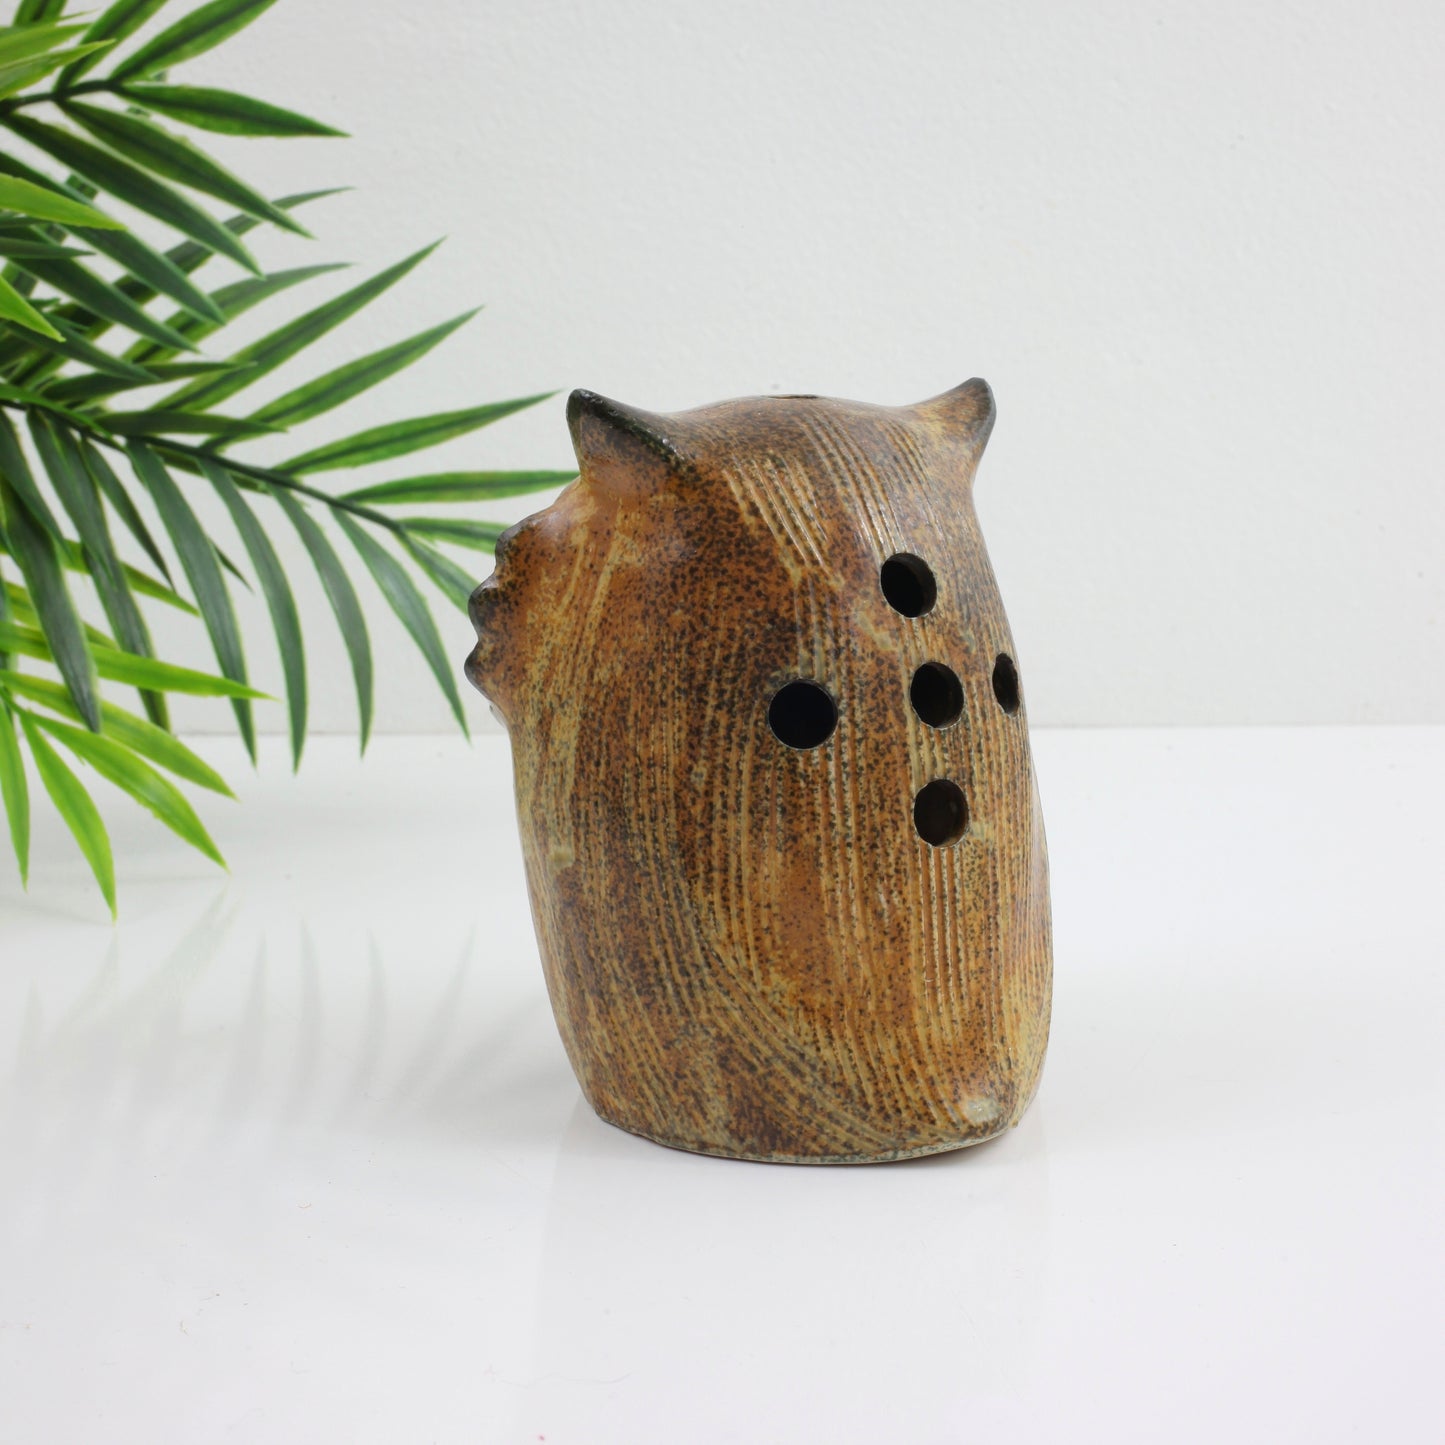 SOLD - Vintage Stoneware Owl Candle Holder & Incense Burner w/ Flower Eyes